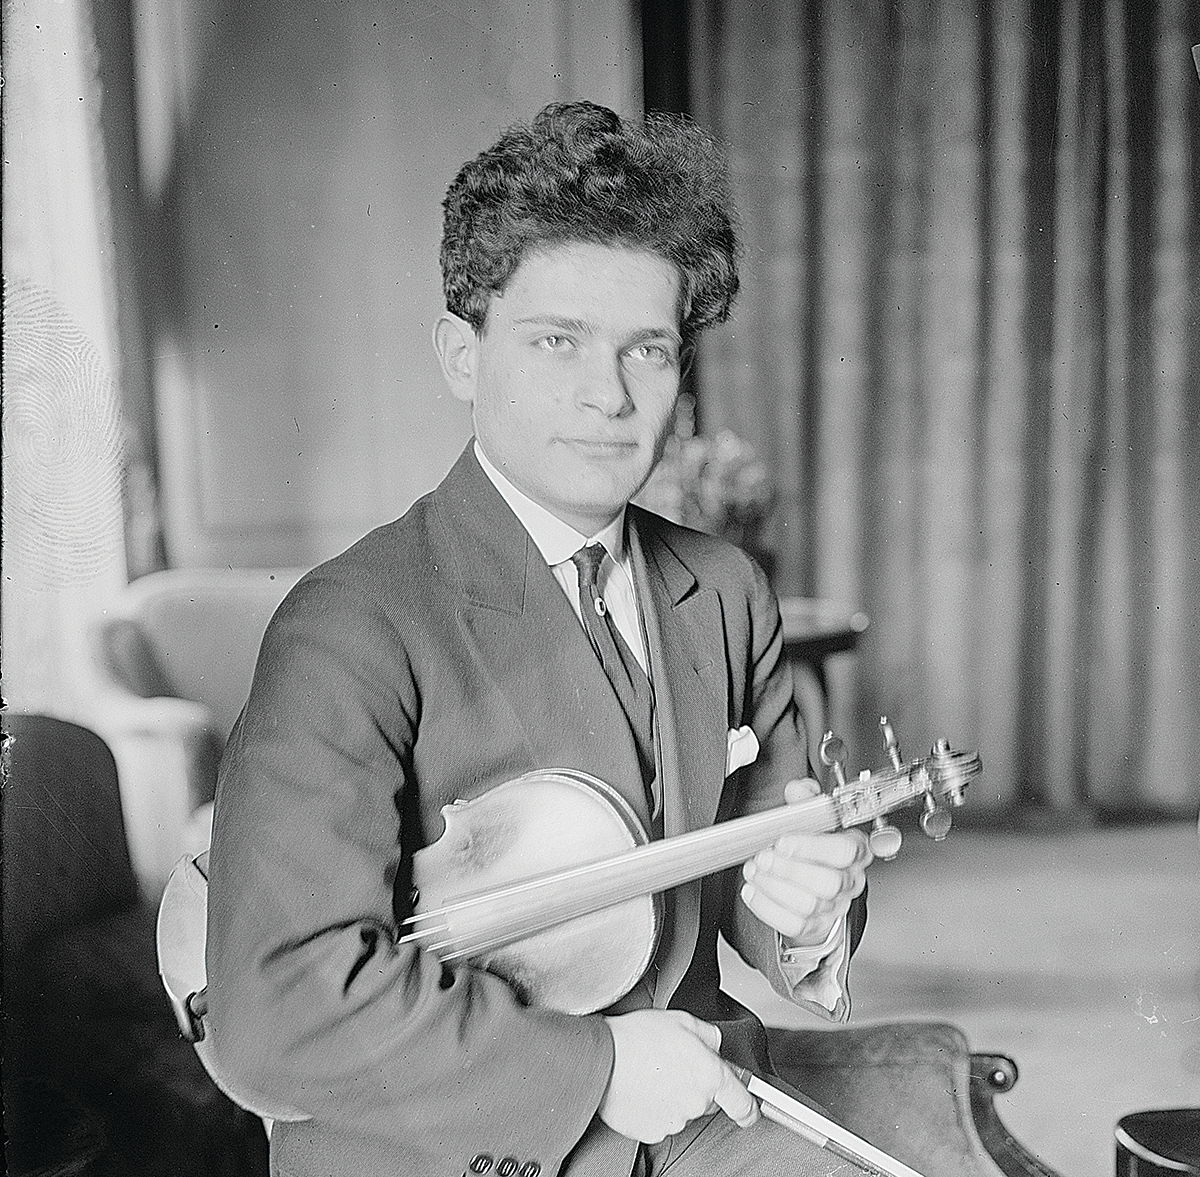 Toscha Seidel, circa 1920 (Library of Congress)